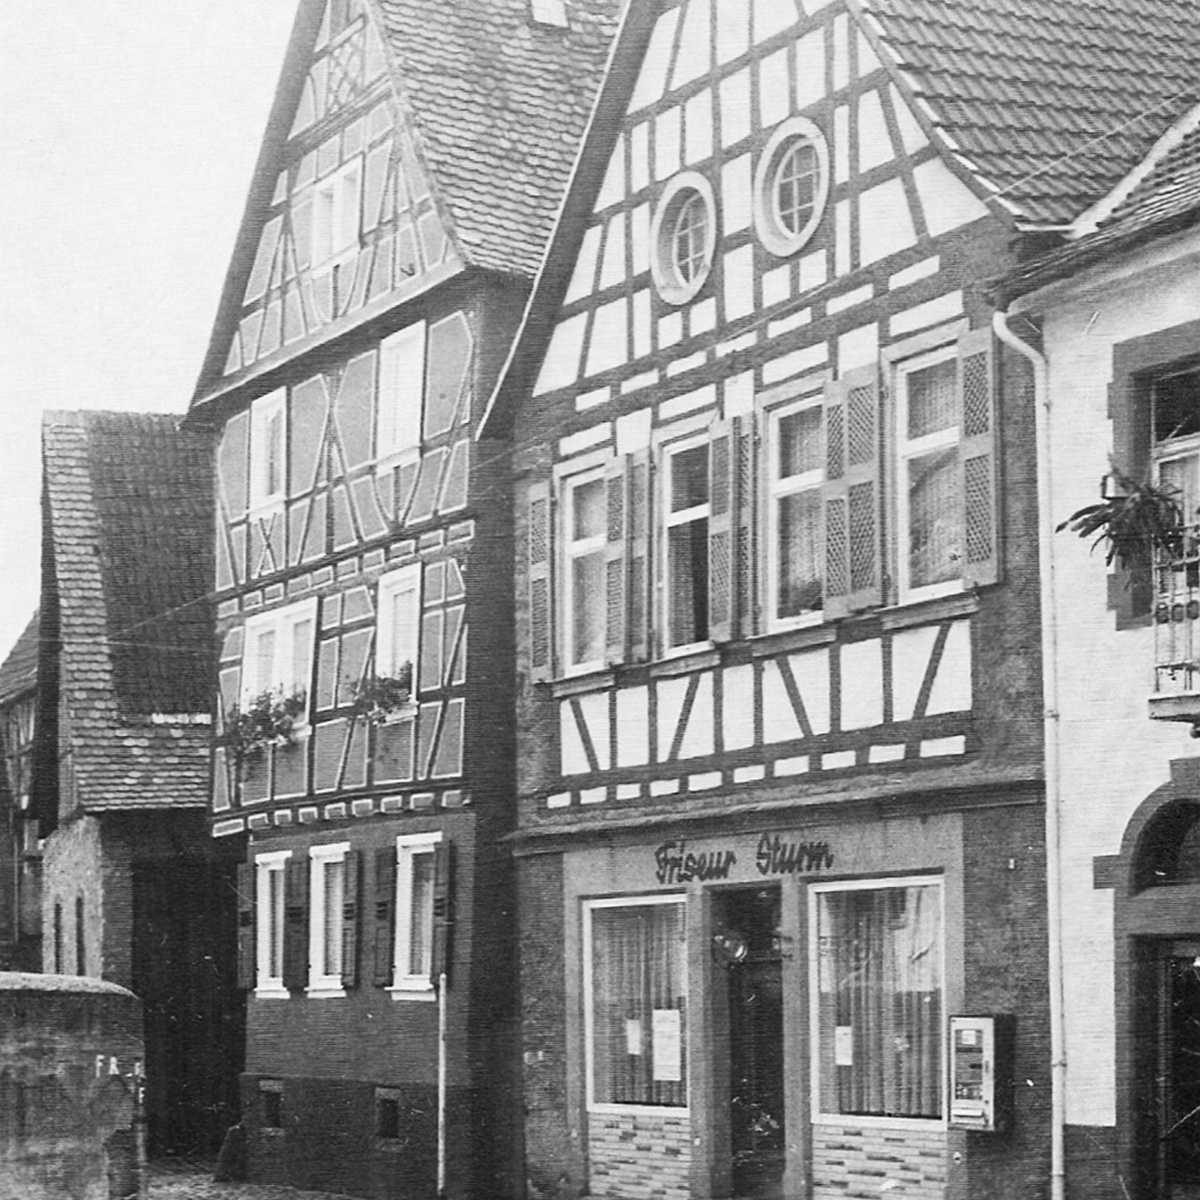 Historisches Foto des Gebäudes schwarzweiß Friseur Sturm